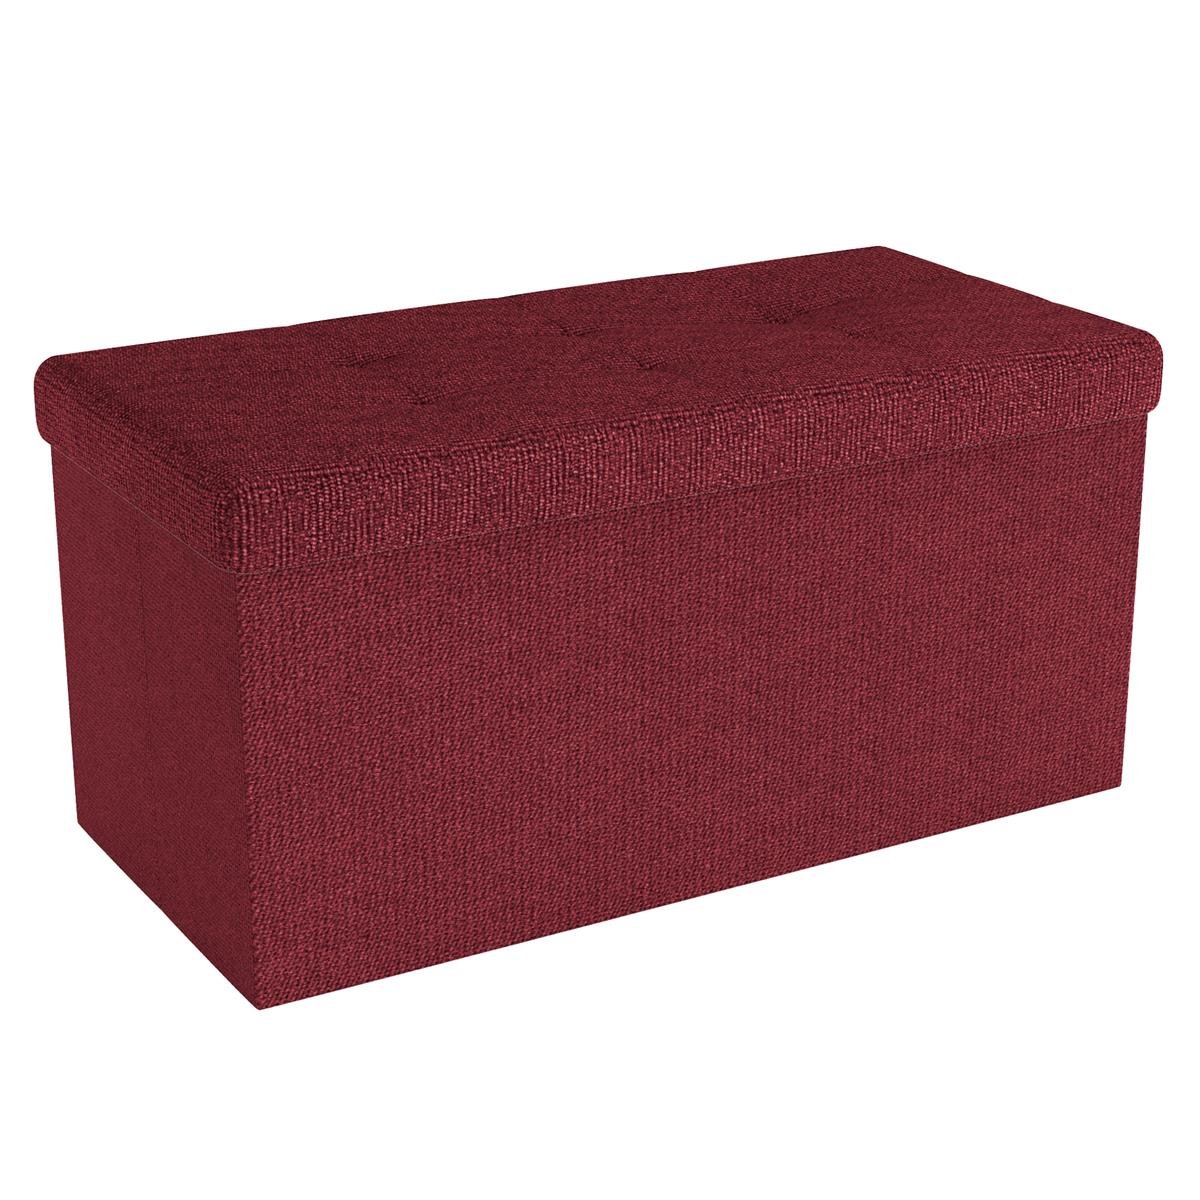 Zdjęcia - Puf / sofa Ławka składana 76x38x38 cm w kolorze GRANAT CZERWONY - kostka do siedzenia